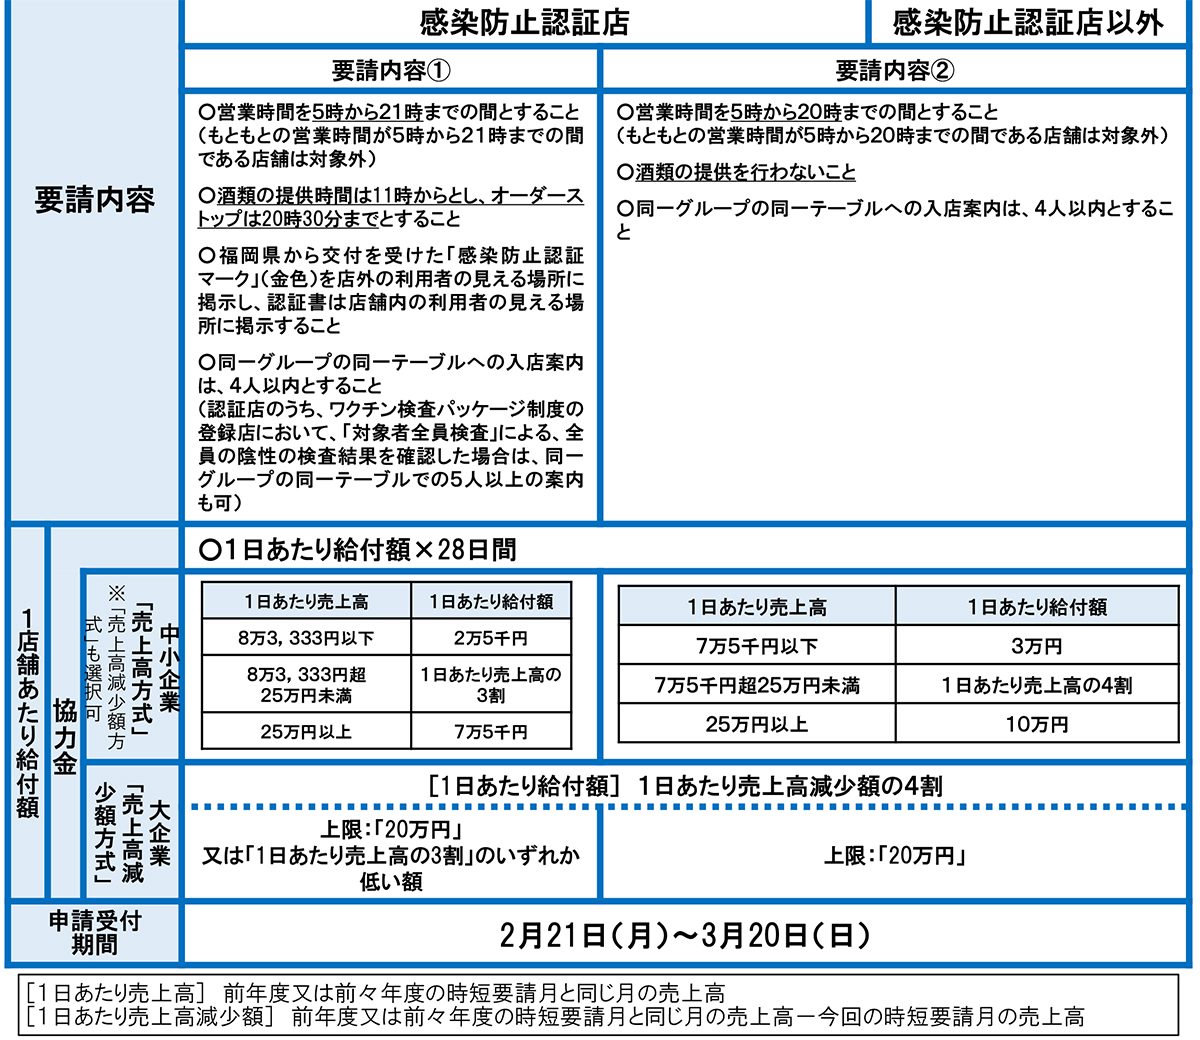 福岡県感染拡大防止協力金 先渡給付 申請受付